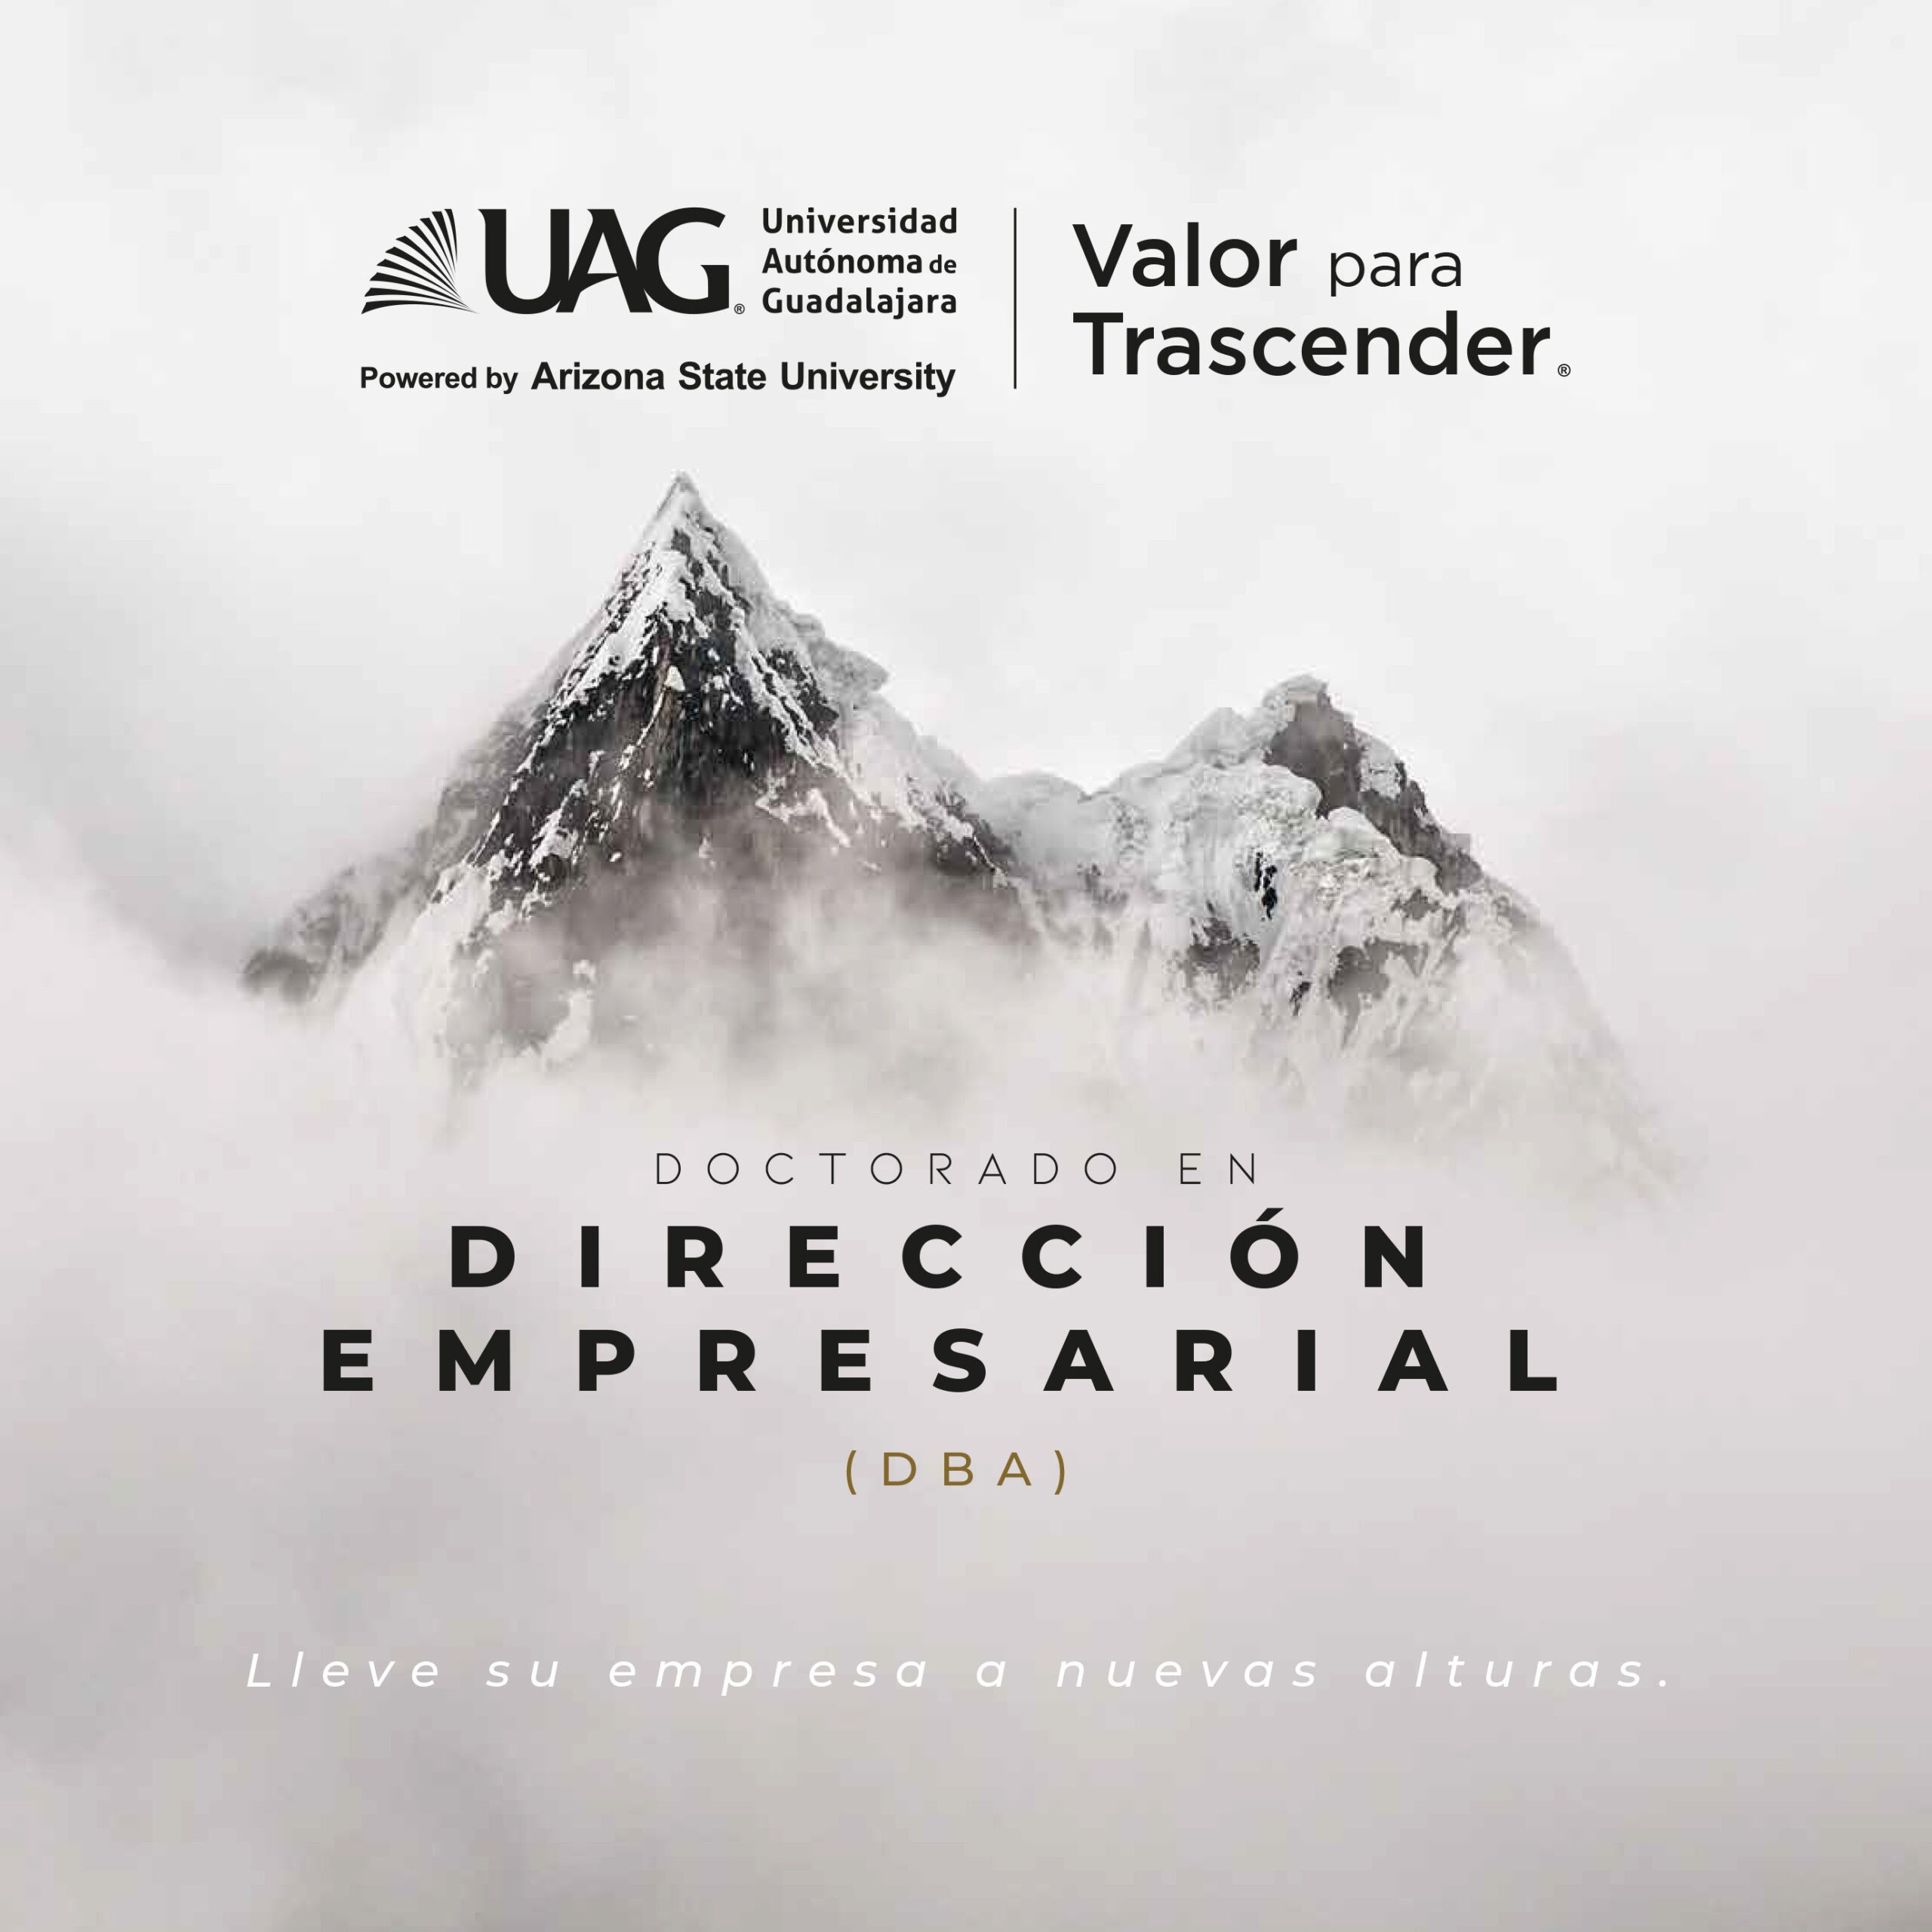 UAG Direccion empresarial